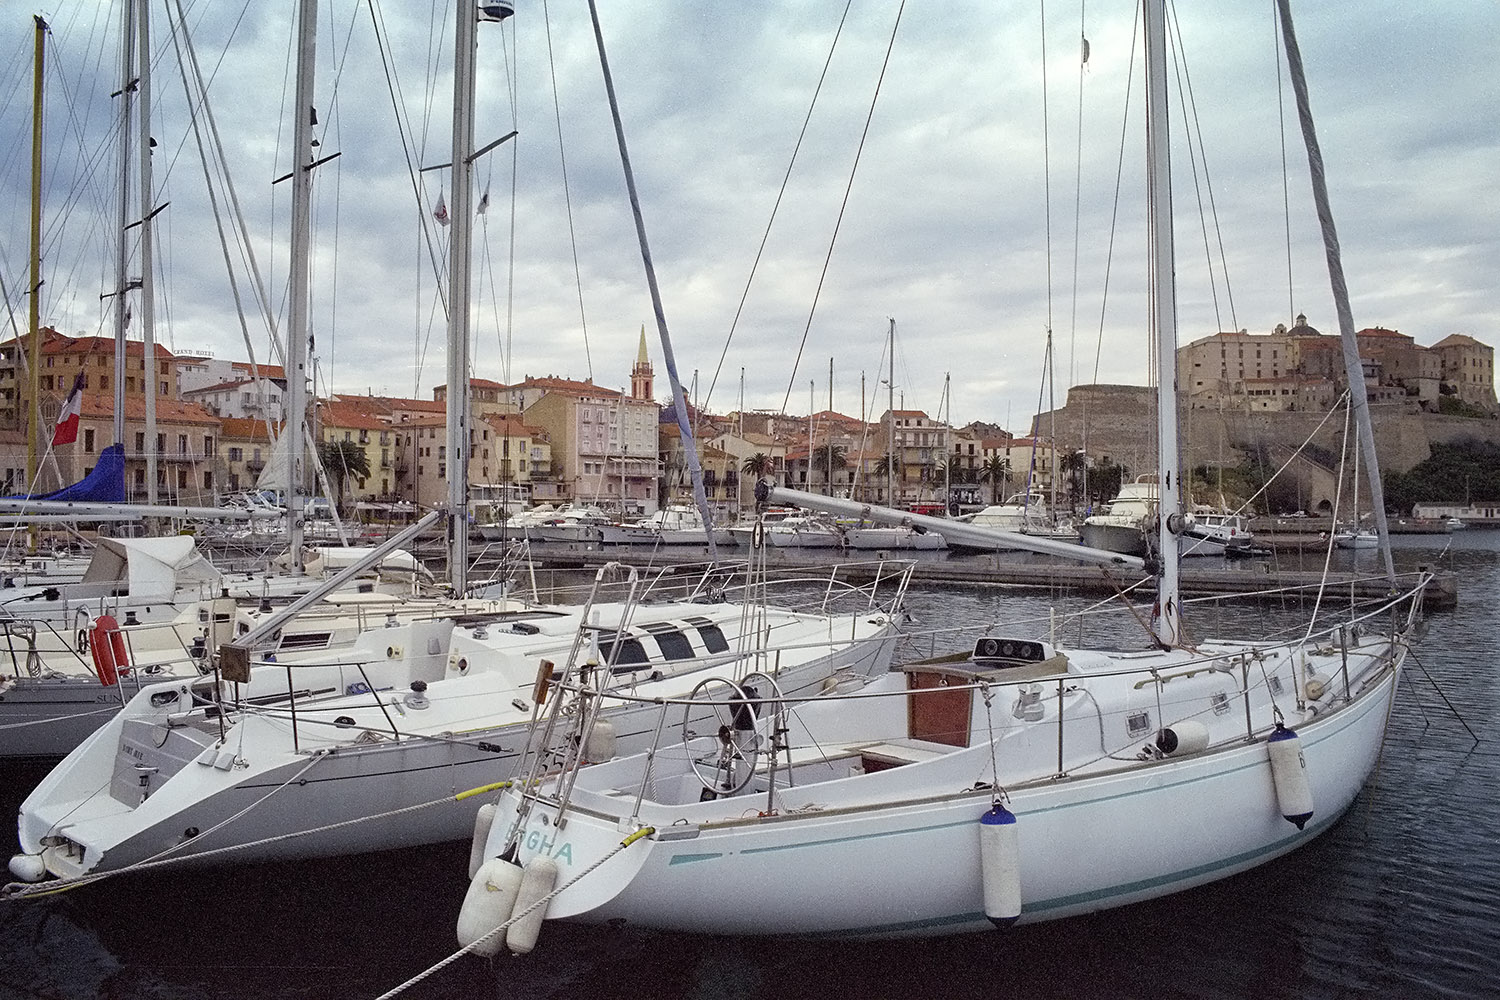 The harbor of Calvi